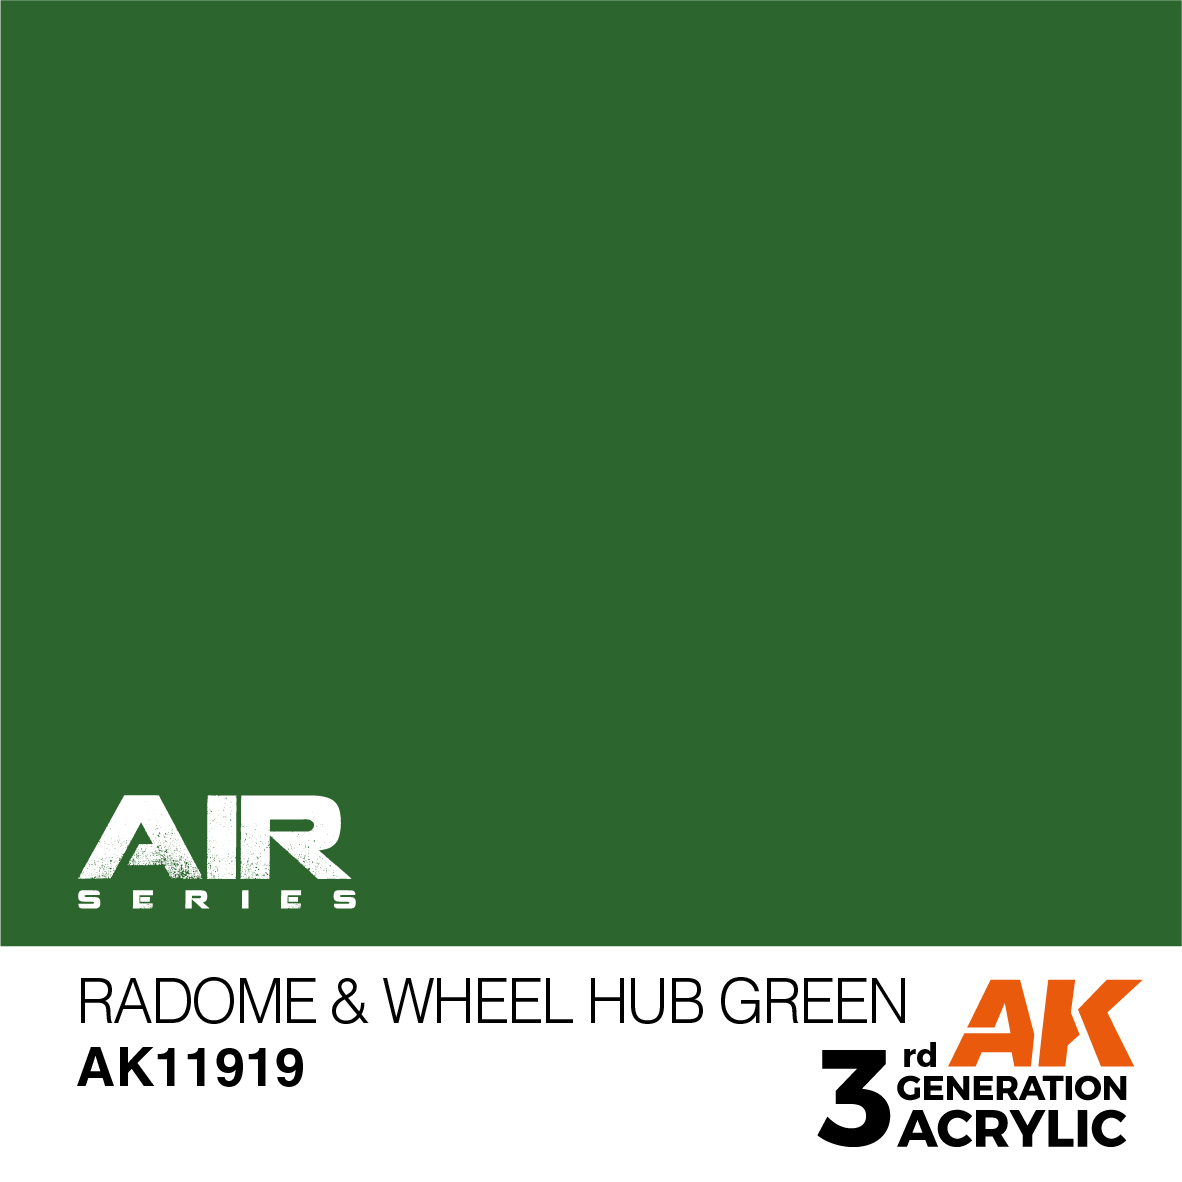 Radome & Wheel Hub Green – AIR